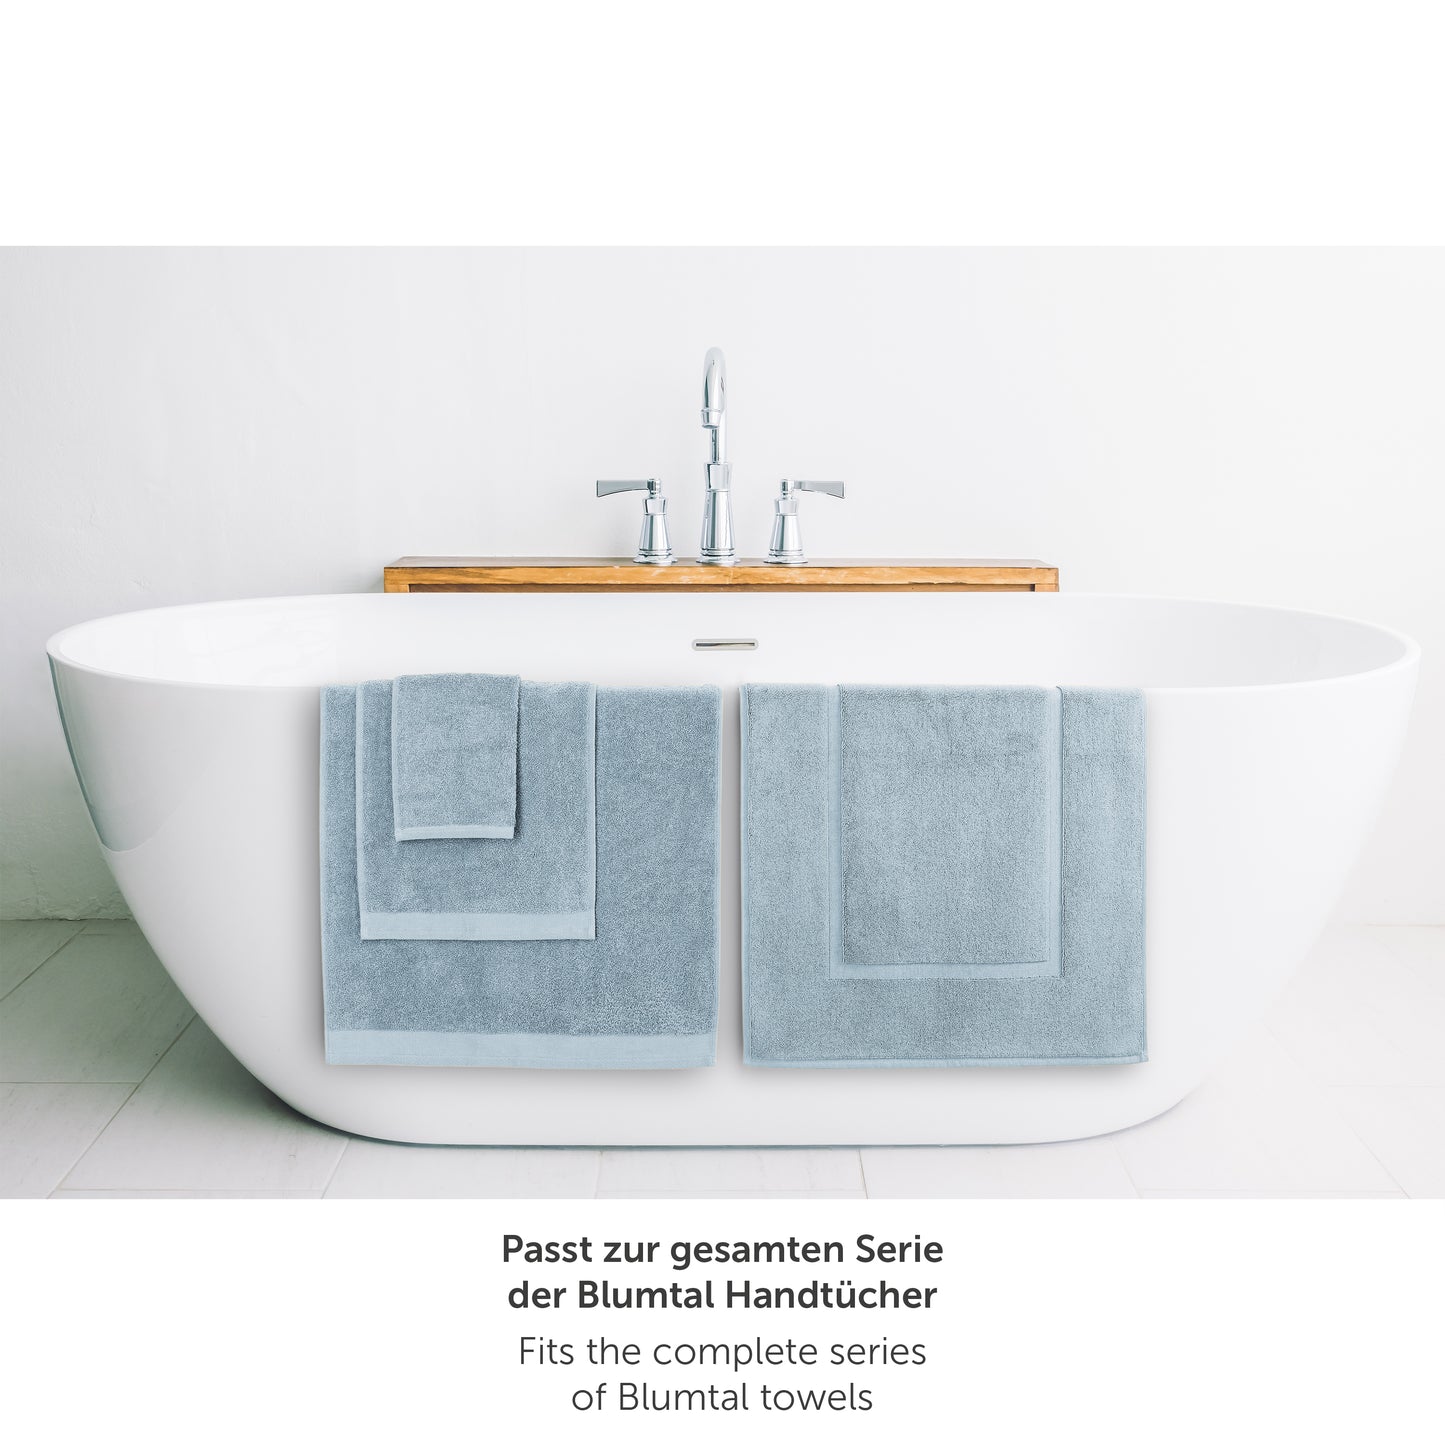 Hellblaues Handtuch neben Badewanne passend zur Blumtal Handtuchserie.